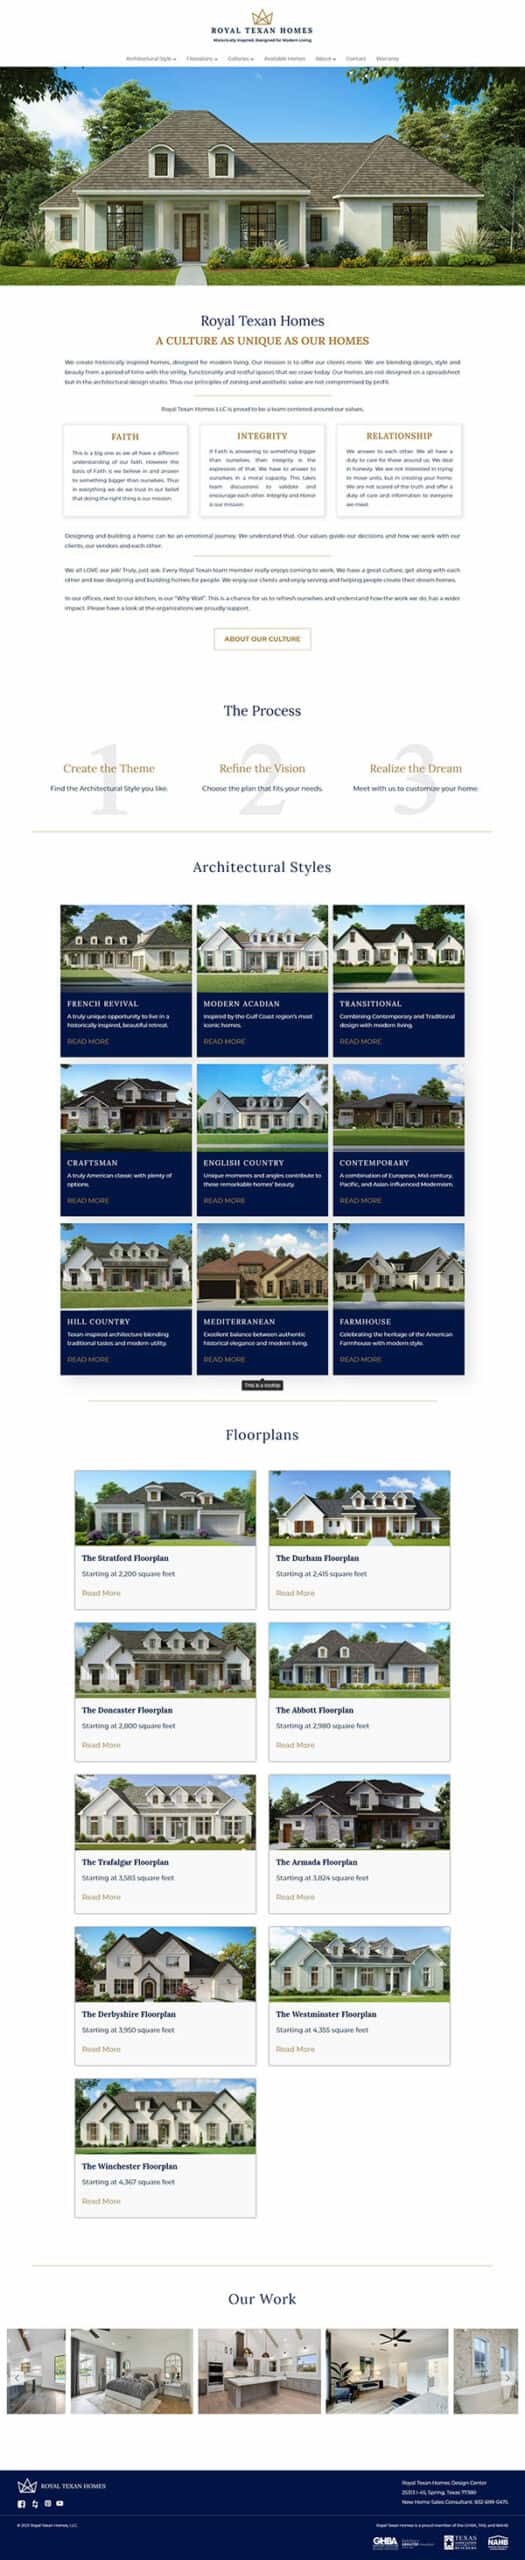 Royal Texan Homes Home Page